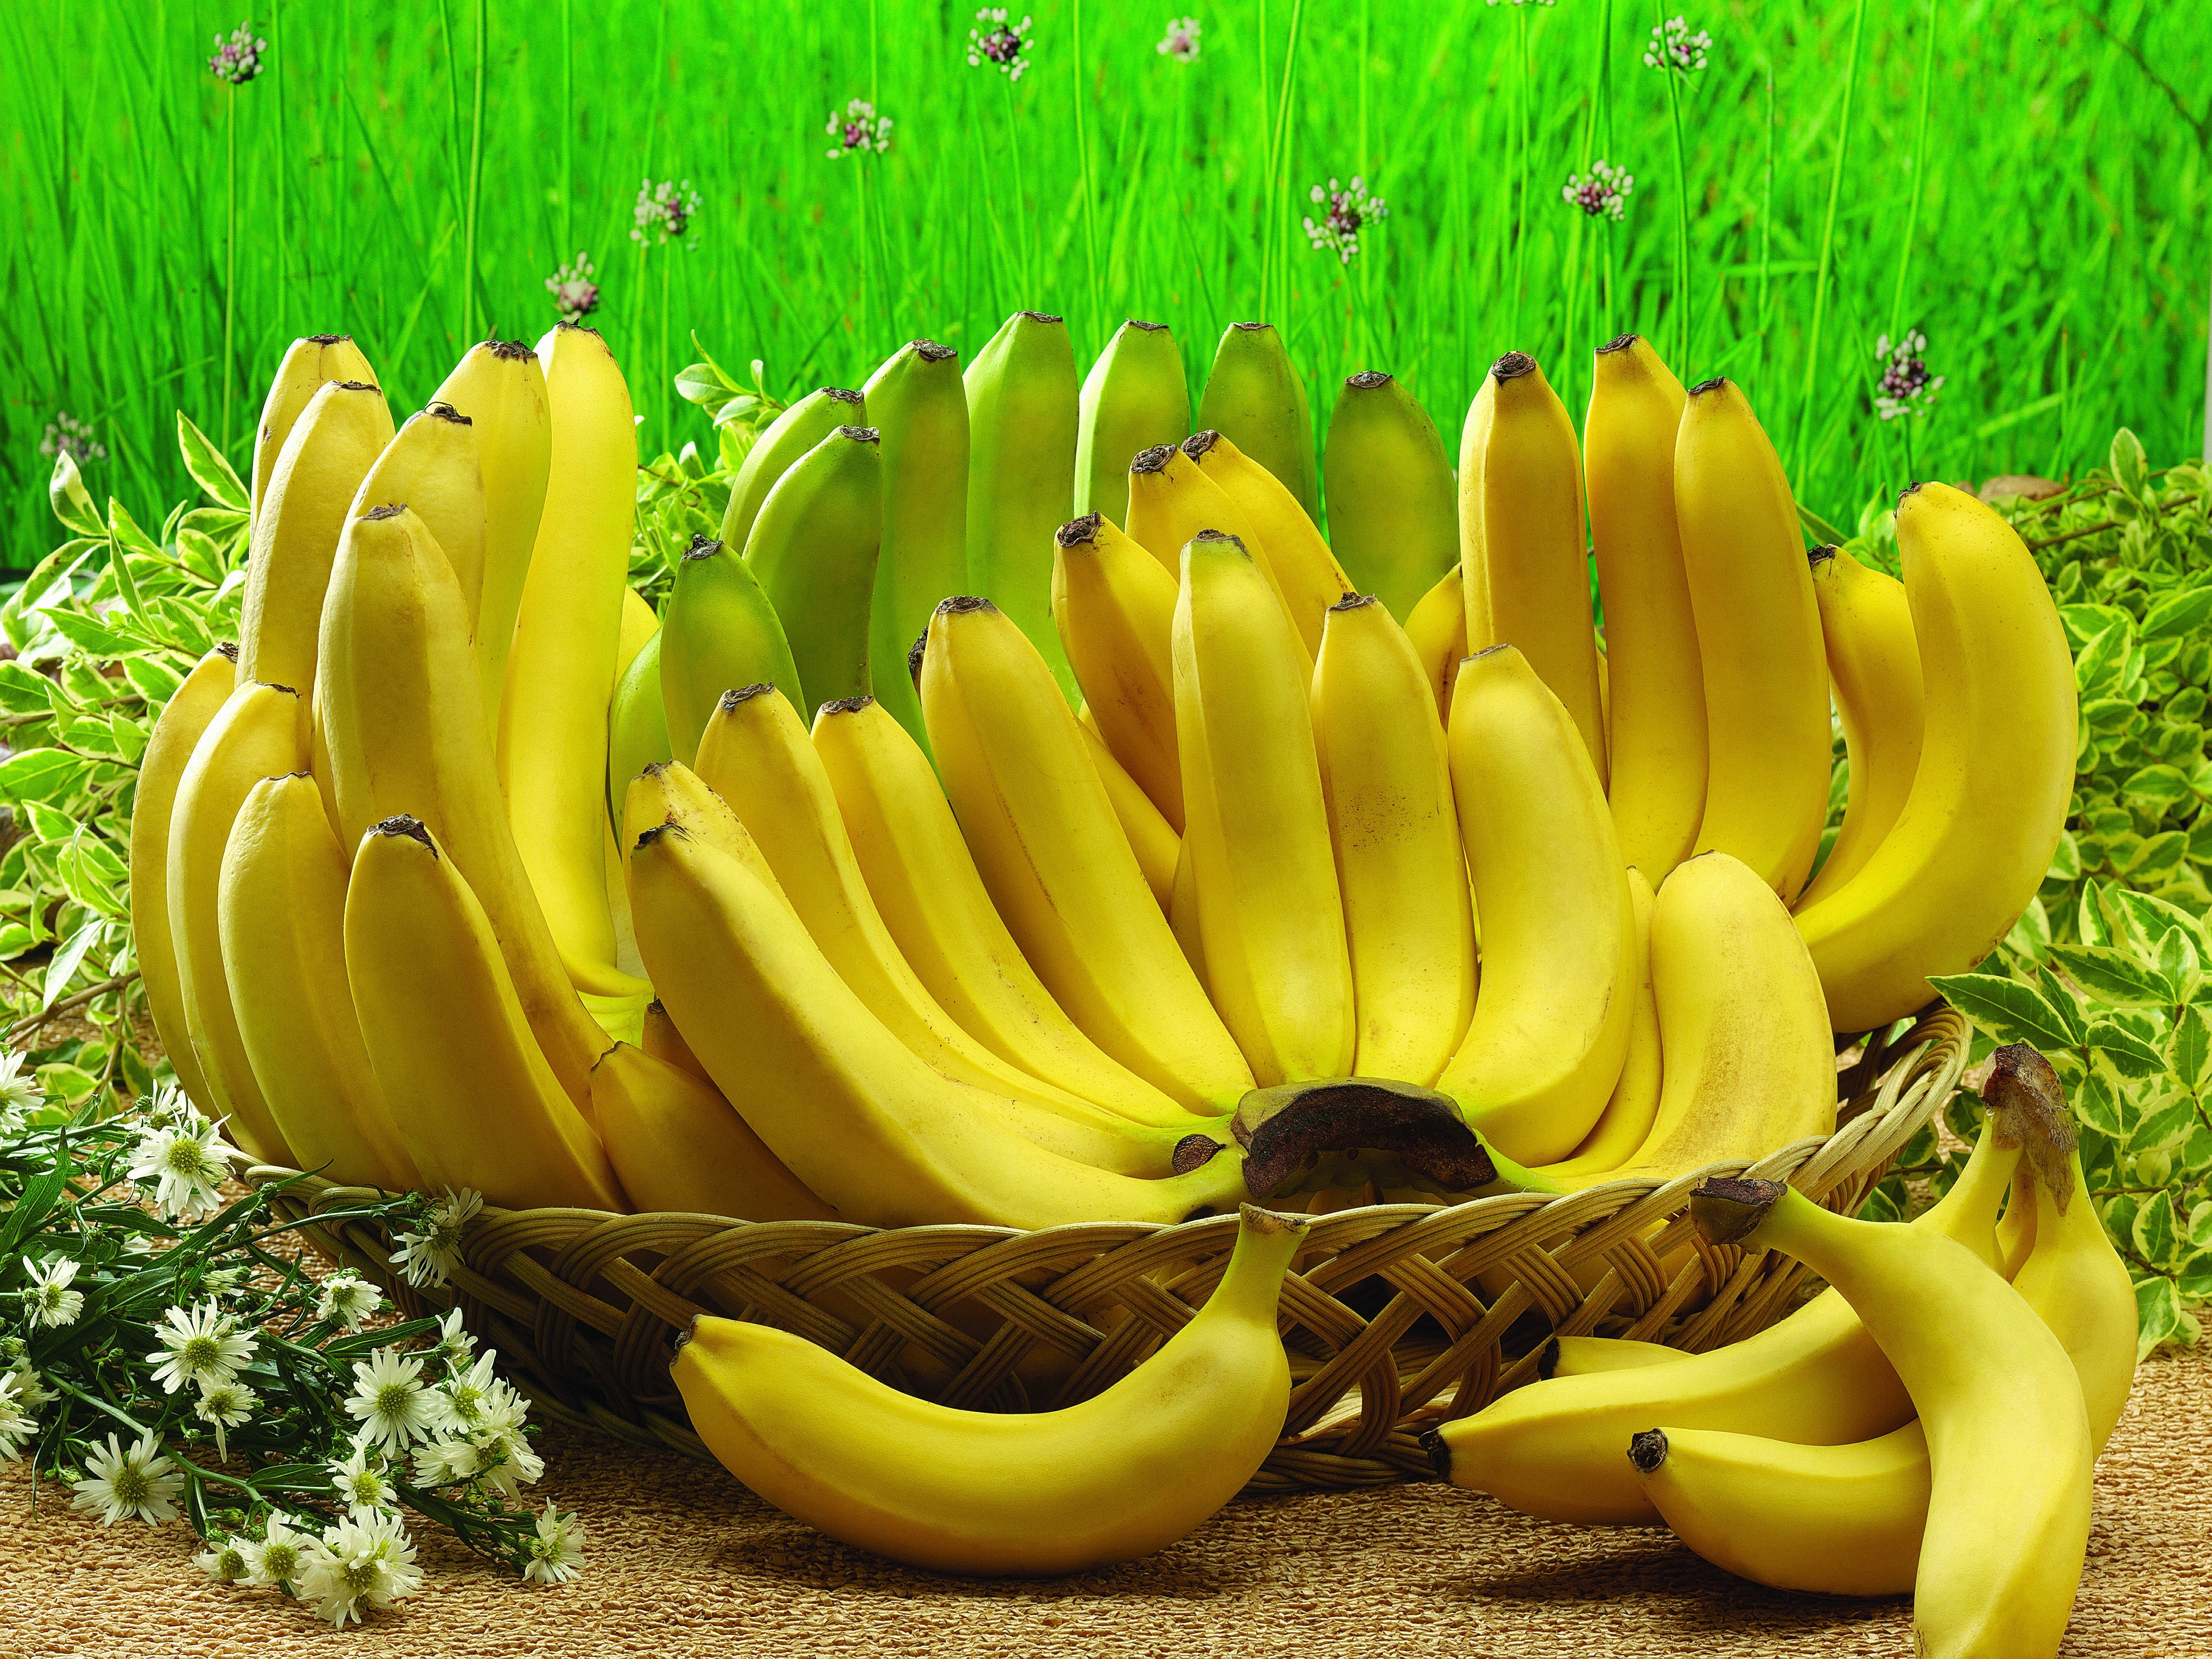 바나나 벽지,바나나 가족,바나나,노랑,자연 식품,식물